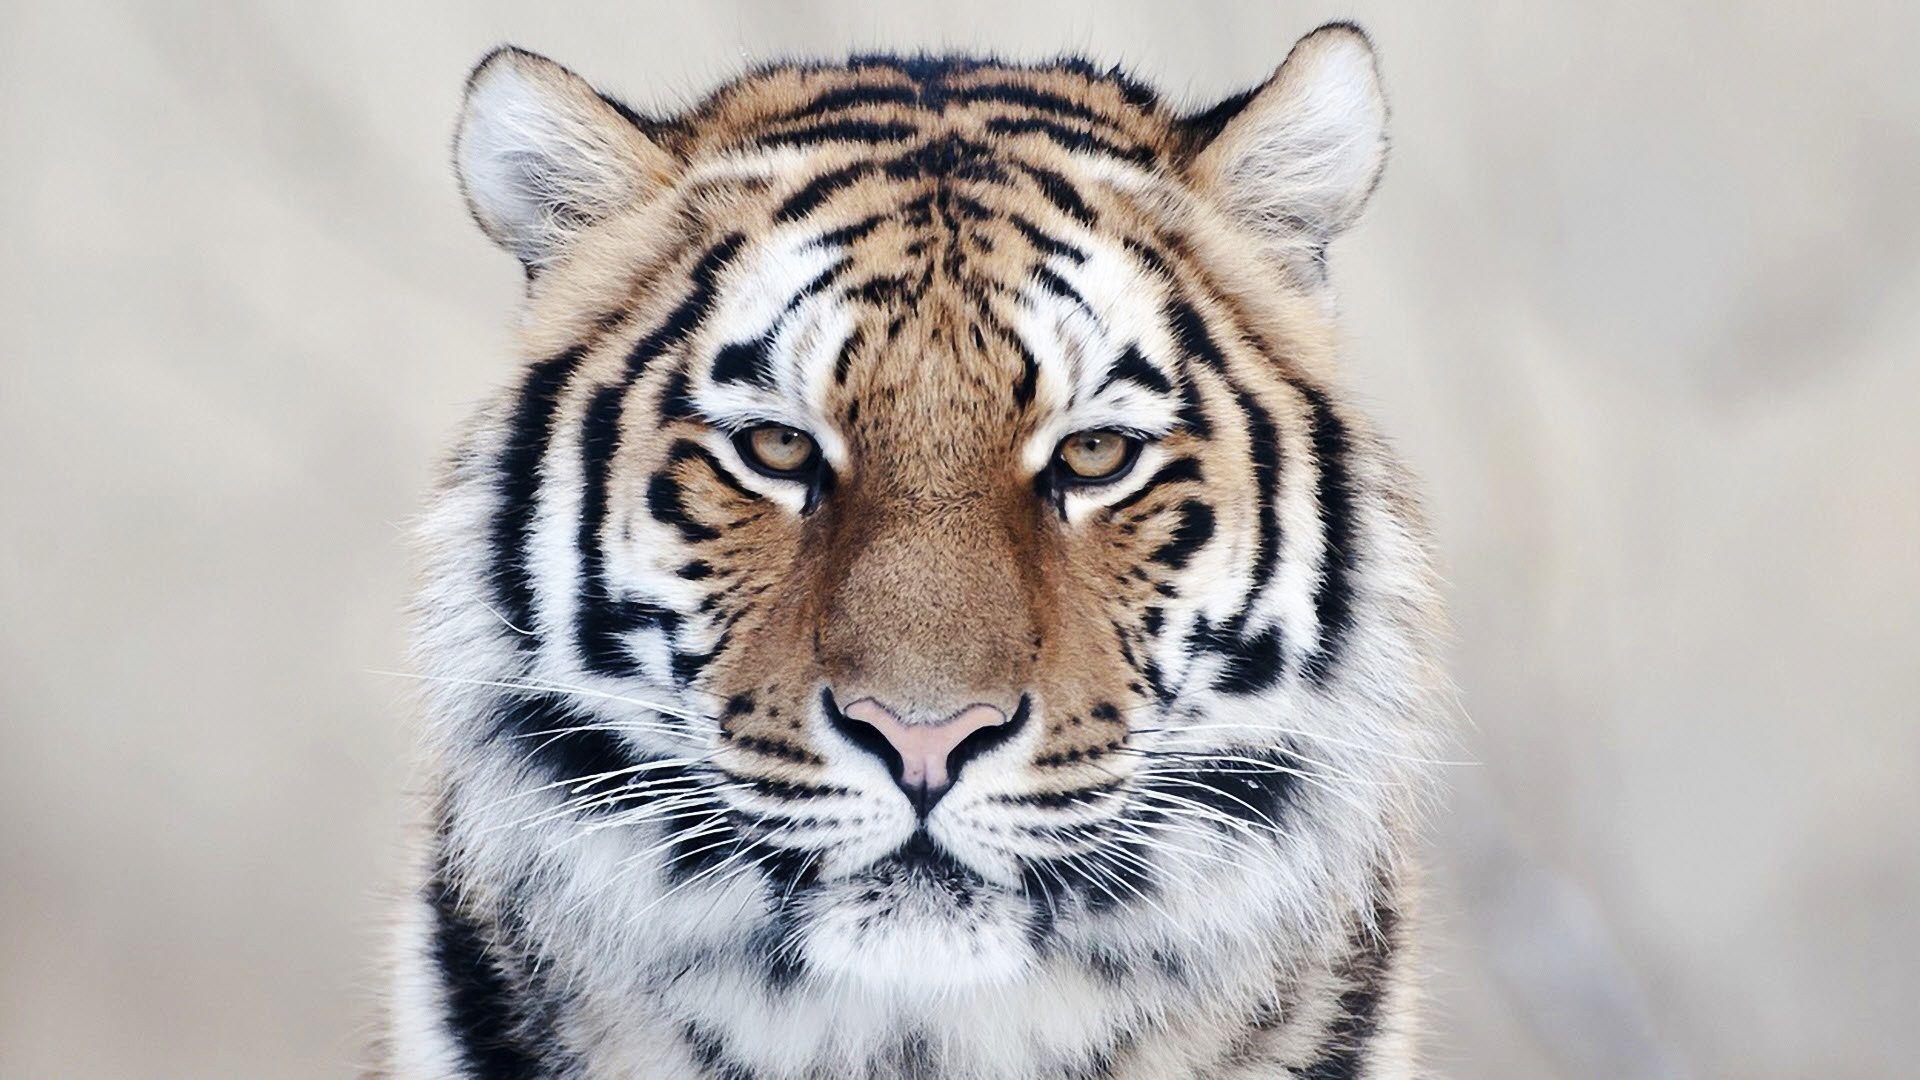 Tiger Close Up Wallpaper